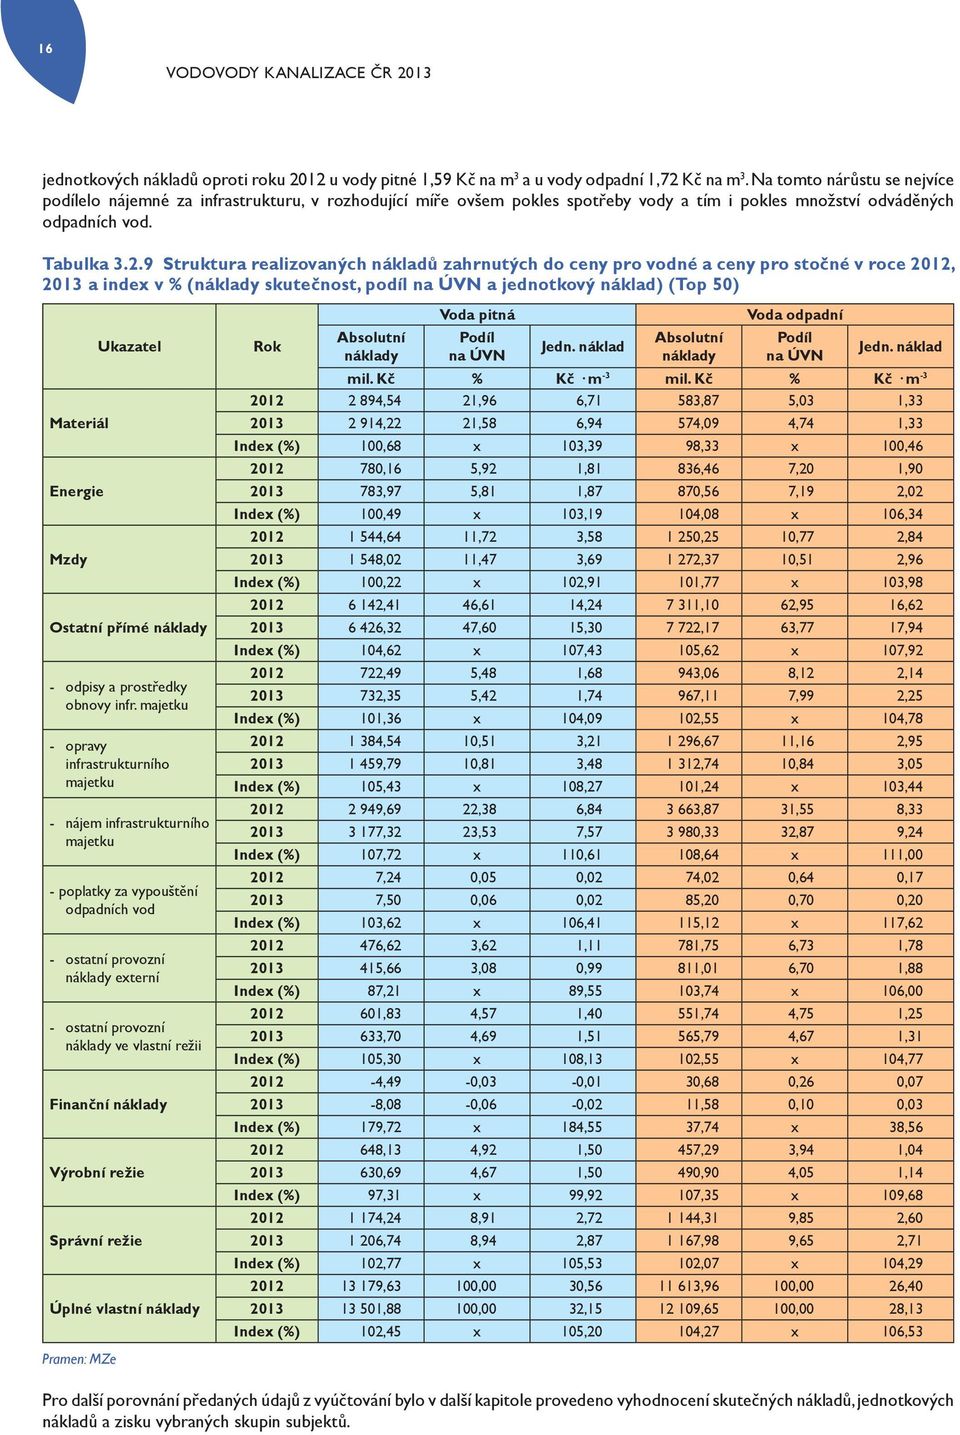 9 Struktura realizovaných nákladů zahrnutých do ceny pro vodné a ceny pro stočné v roce 2012, 2013 a index v % (náklady skutečnost, podíl na ÚVN a jednotkový náklad) (Top 50) Materiál Energie Mzdy